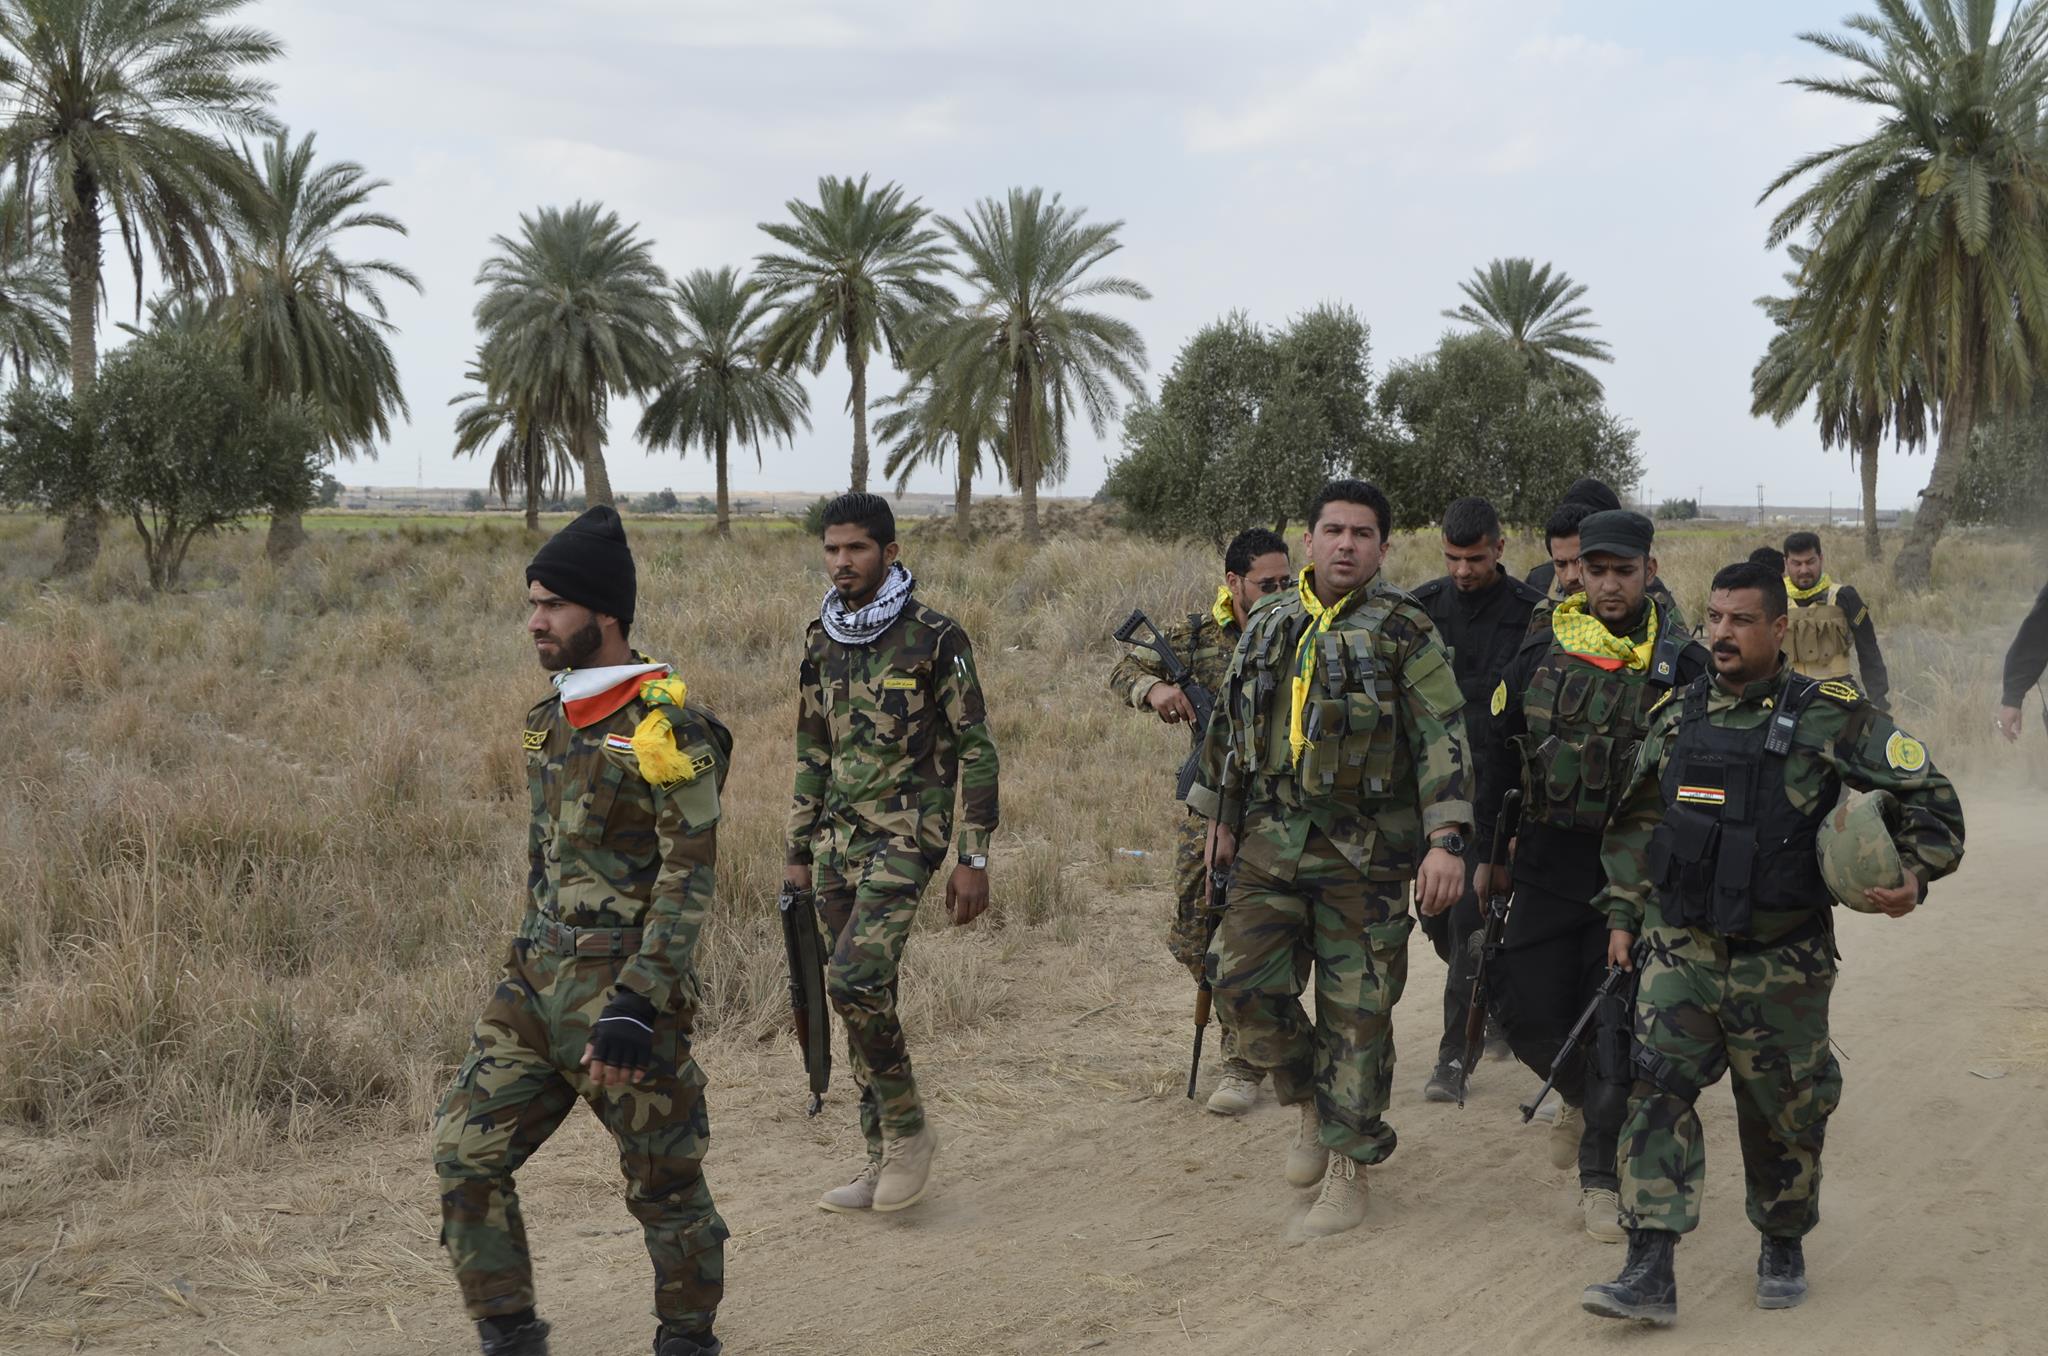 العراق .. إعتقال ما يسمى " مسؤول اغتيالات ولاية الجزيرة بداعش" في الفلوجة